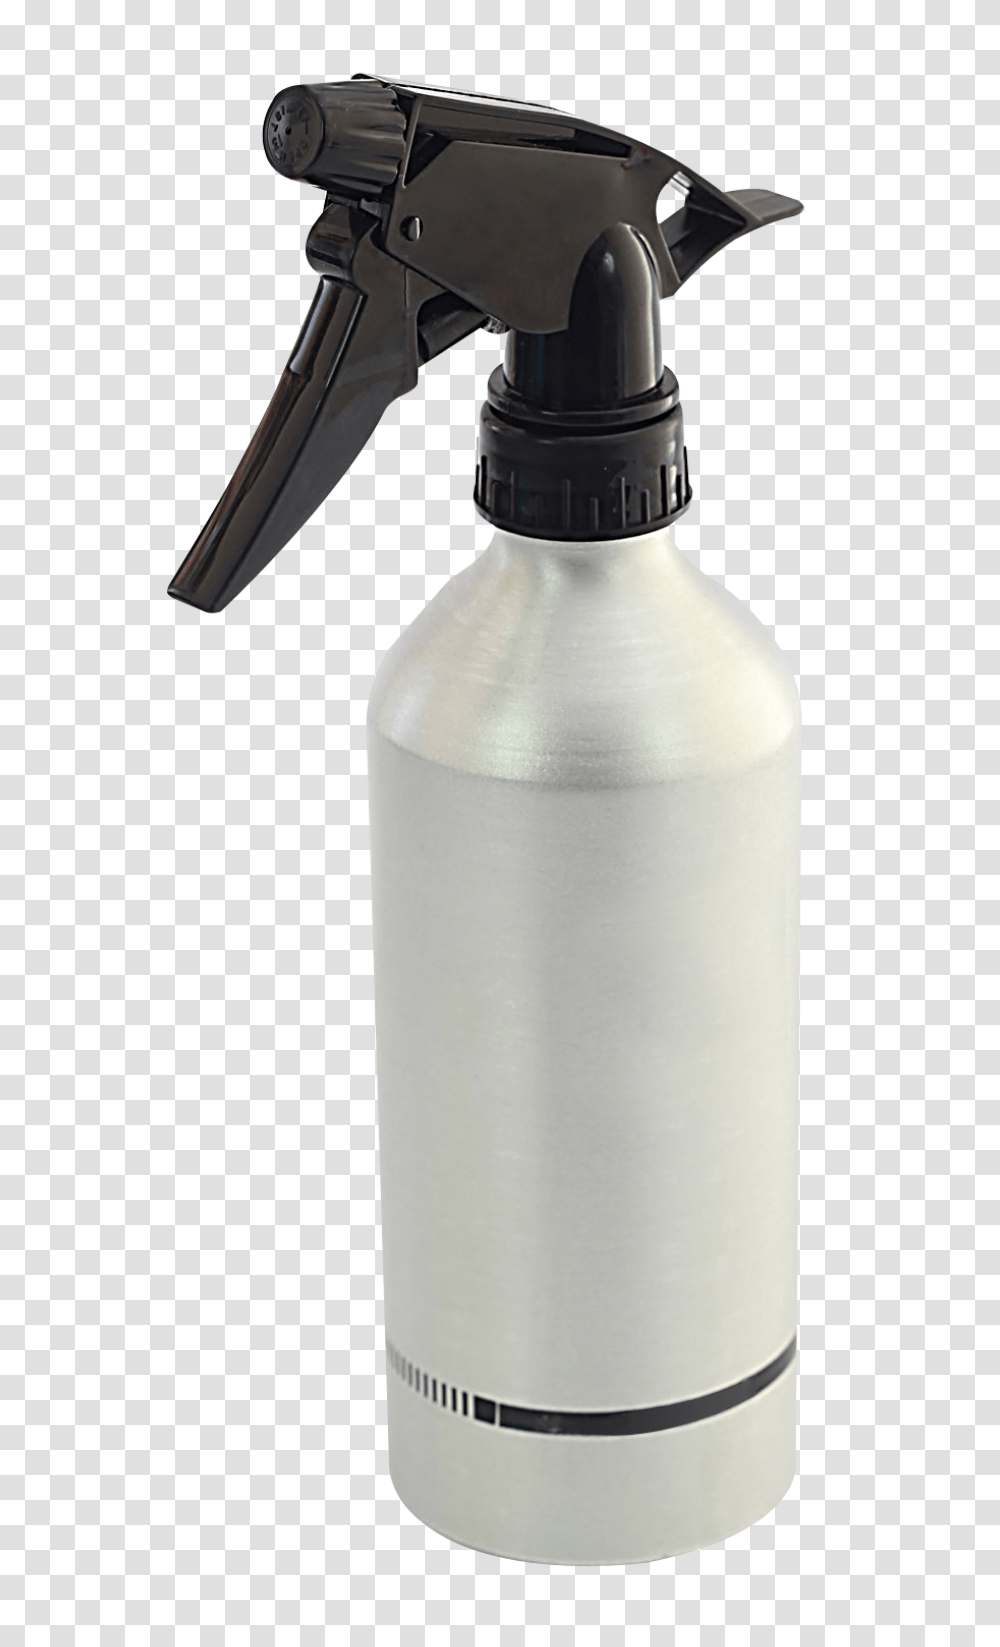 Water Bottle Aquafina Image Pngpix Spray Bottle, Shaker, Can, Tin, Milk Transparent Png